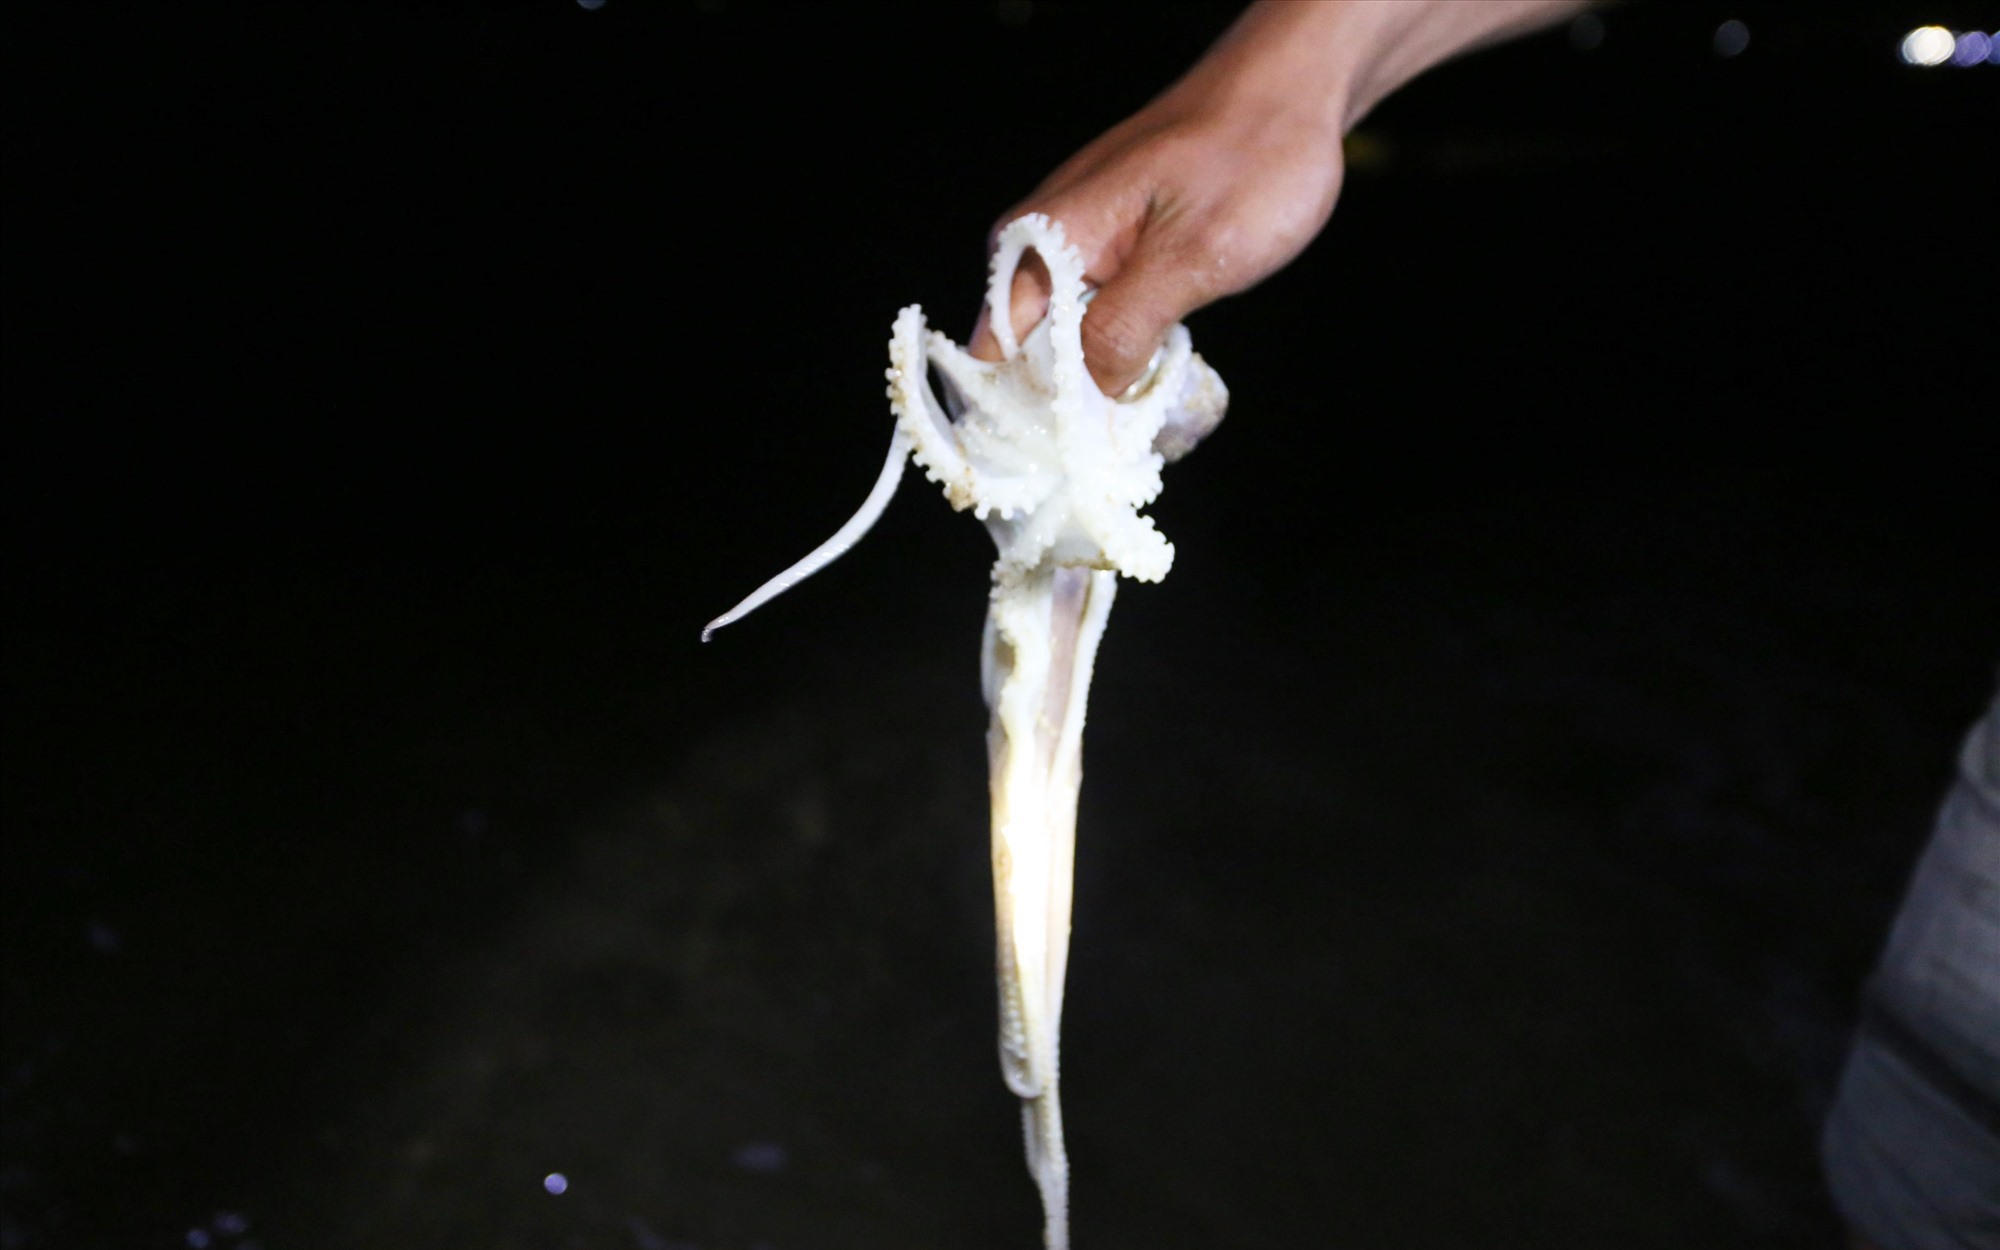 Đổ xô rọi đèn pin xuống một vùng biển ở Quảng Nam bắt con vật cầm lên nó cuốn tay nhồn nhột